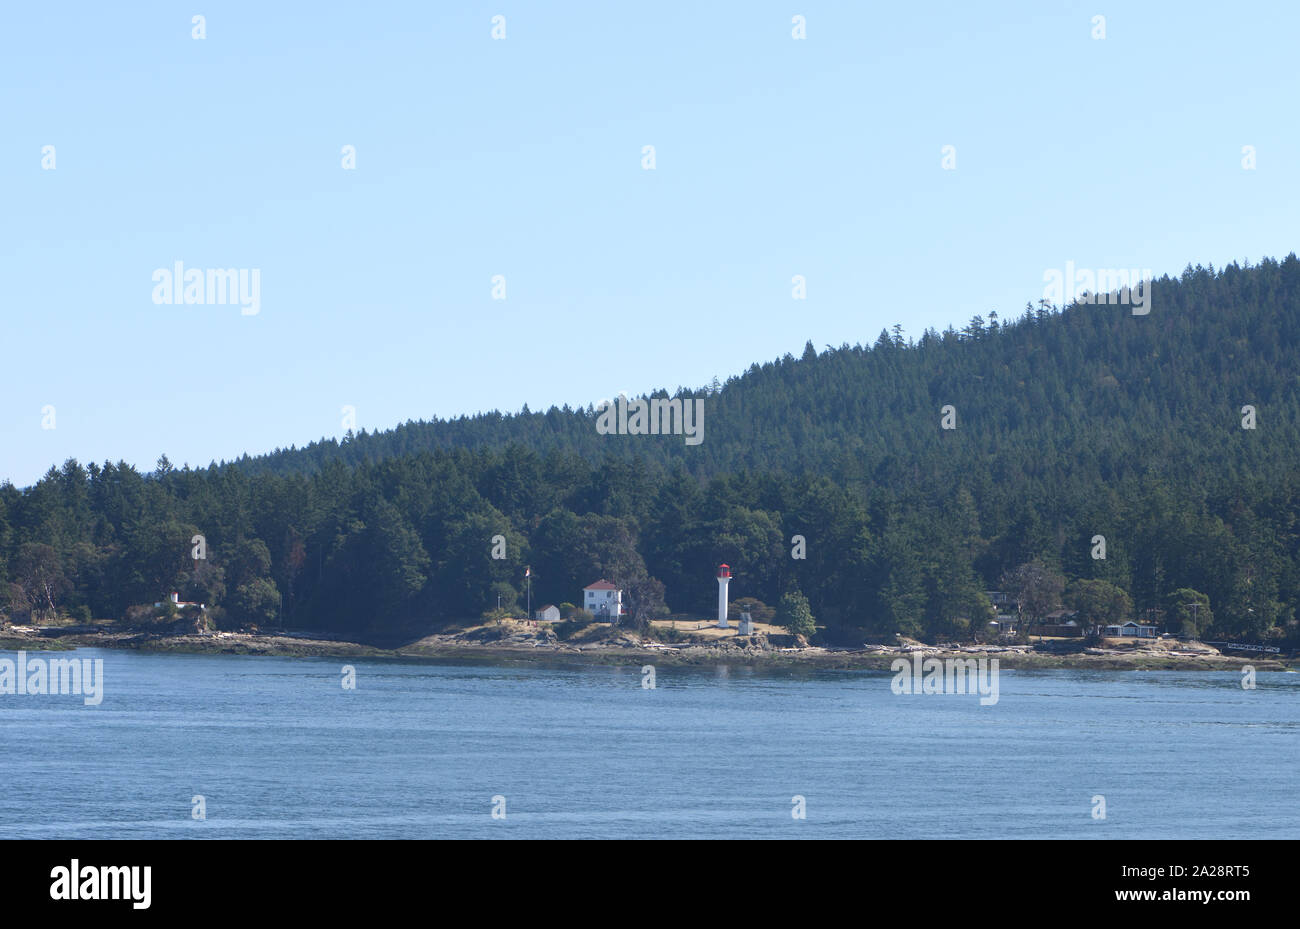 Isole coperte di conifere e promontori con barche e luci viste dal traghetto da Vancouver a Victoria. Vancouver, British Columbia, Canada. Foto Stock